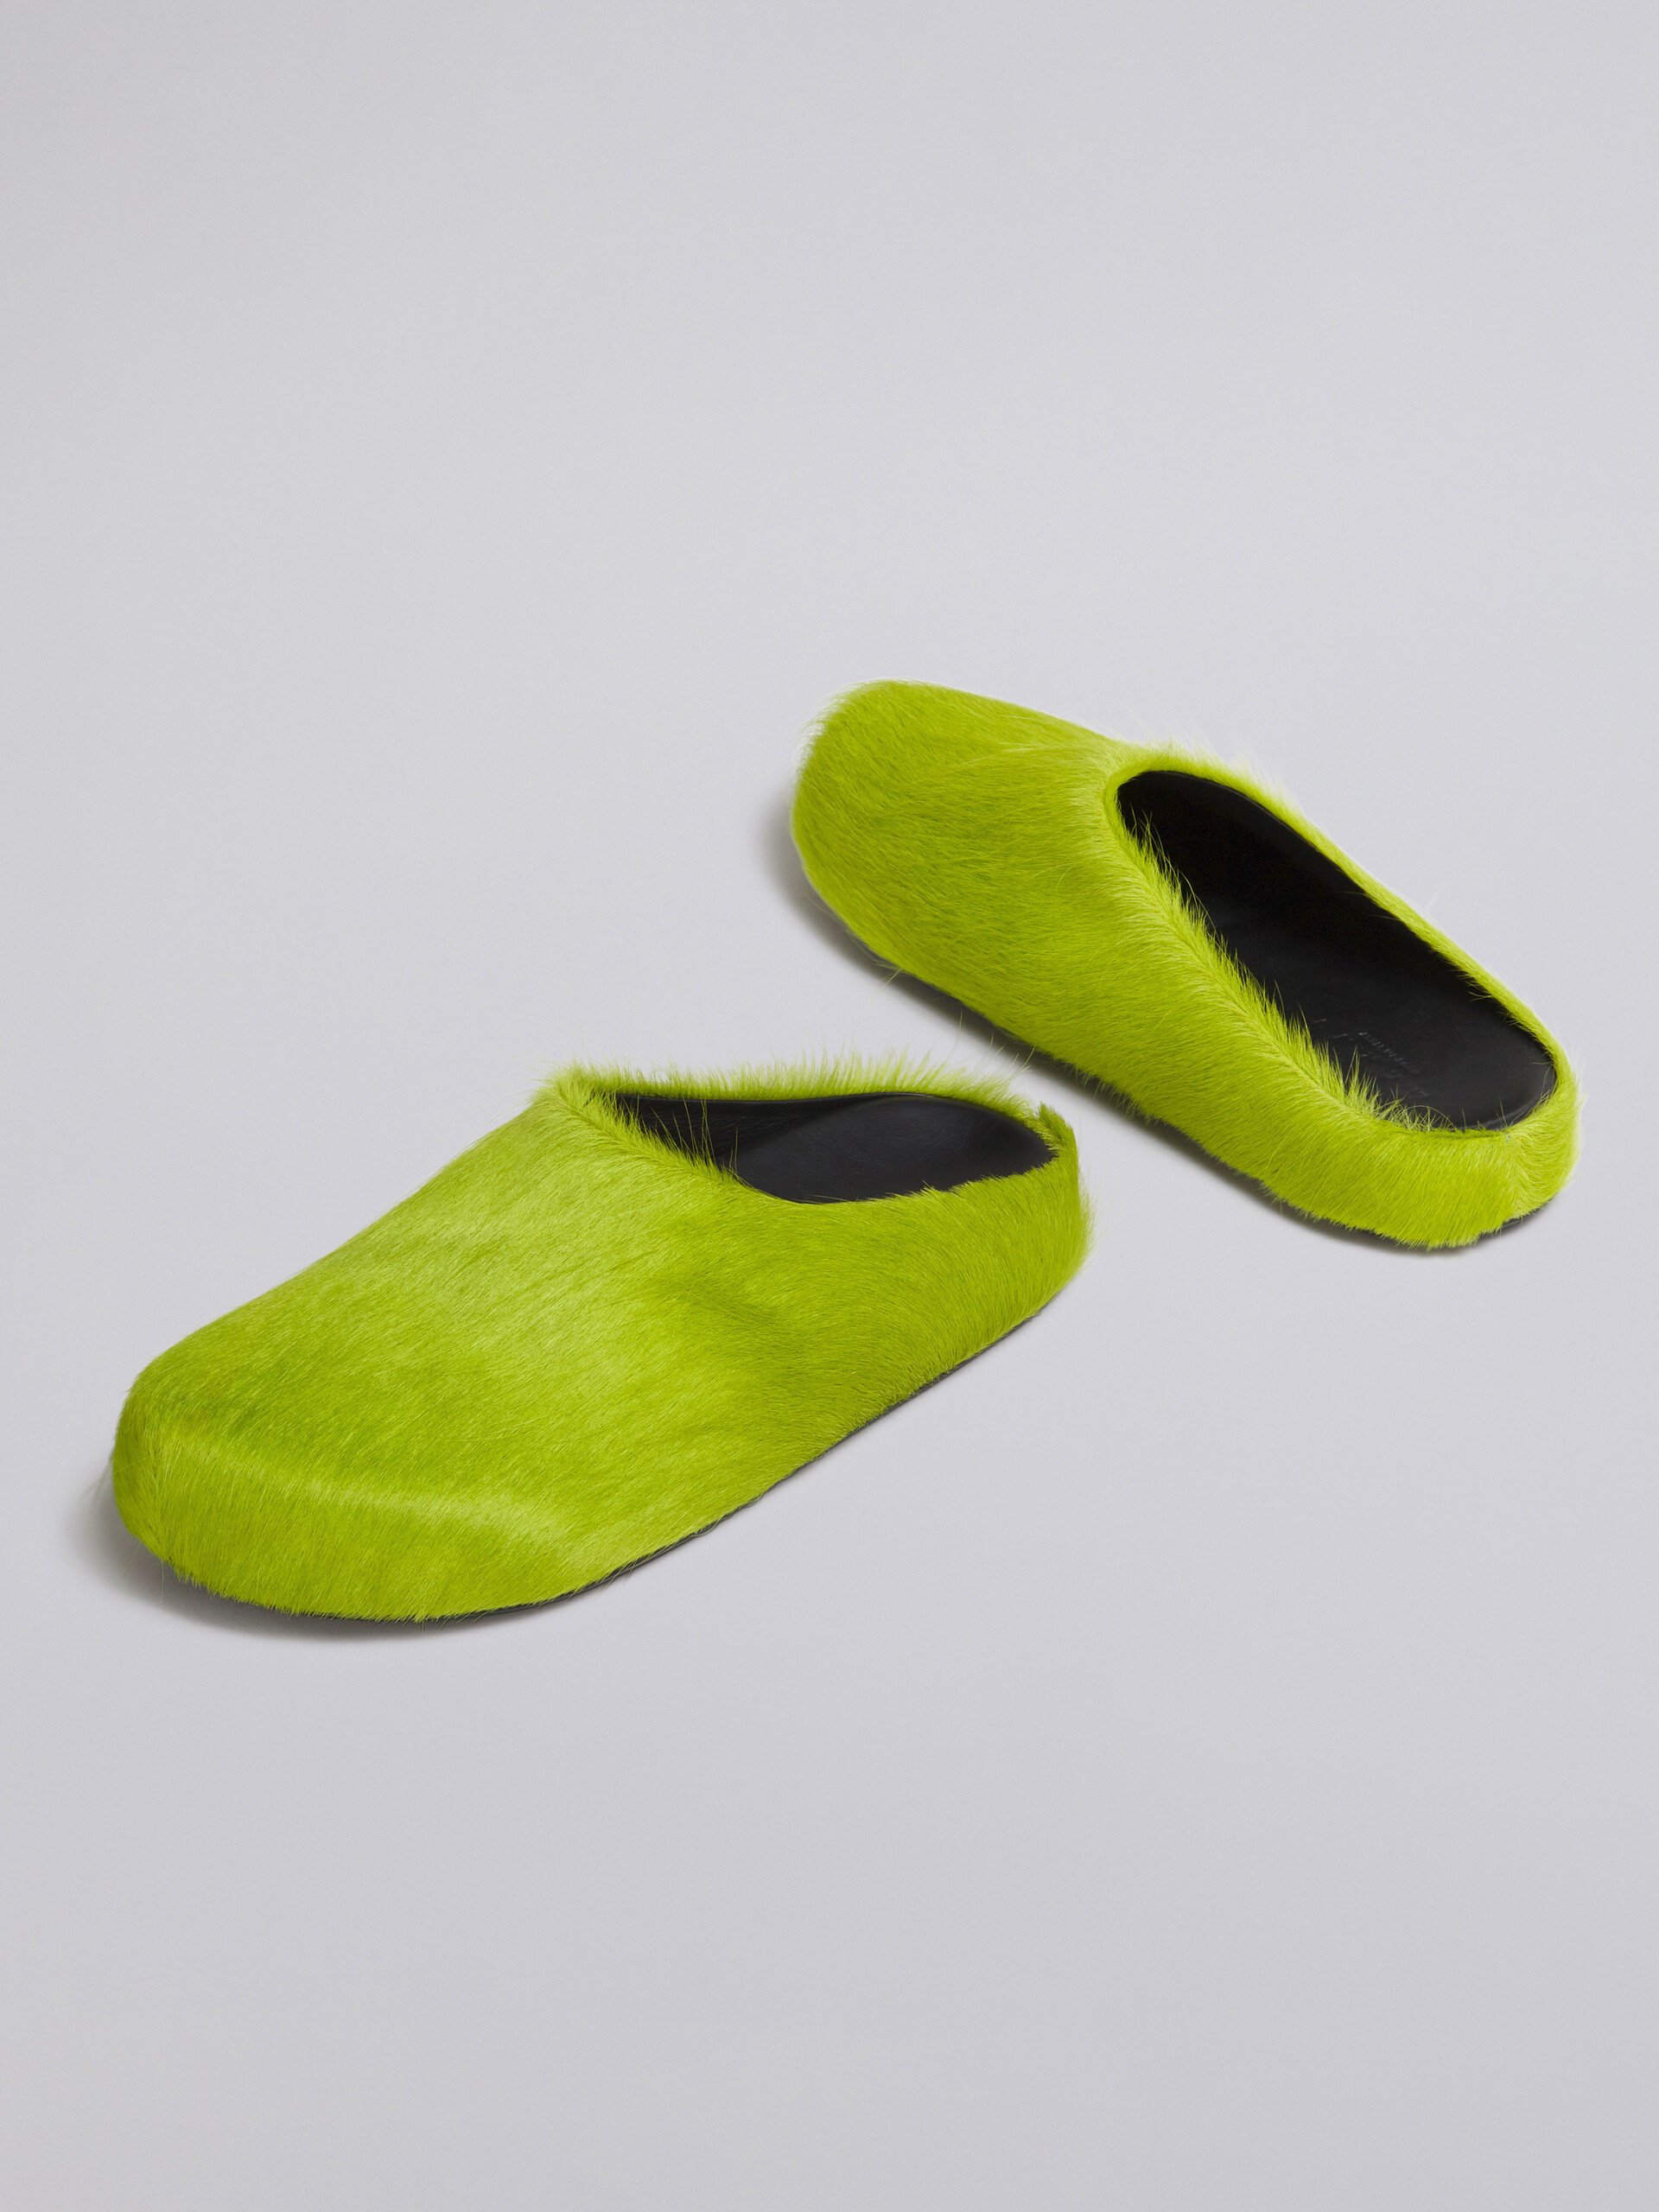 Mocasín sin talón de piel de becerro azul efecto pelo sensación de pies descalzos - Zuecos - Image 5